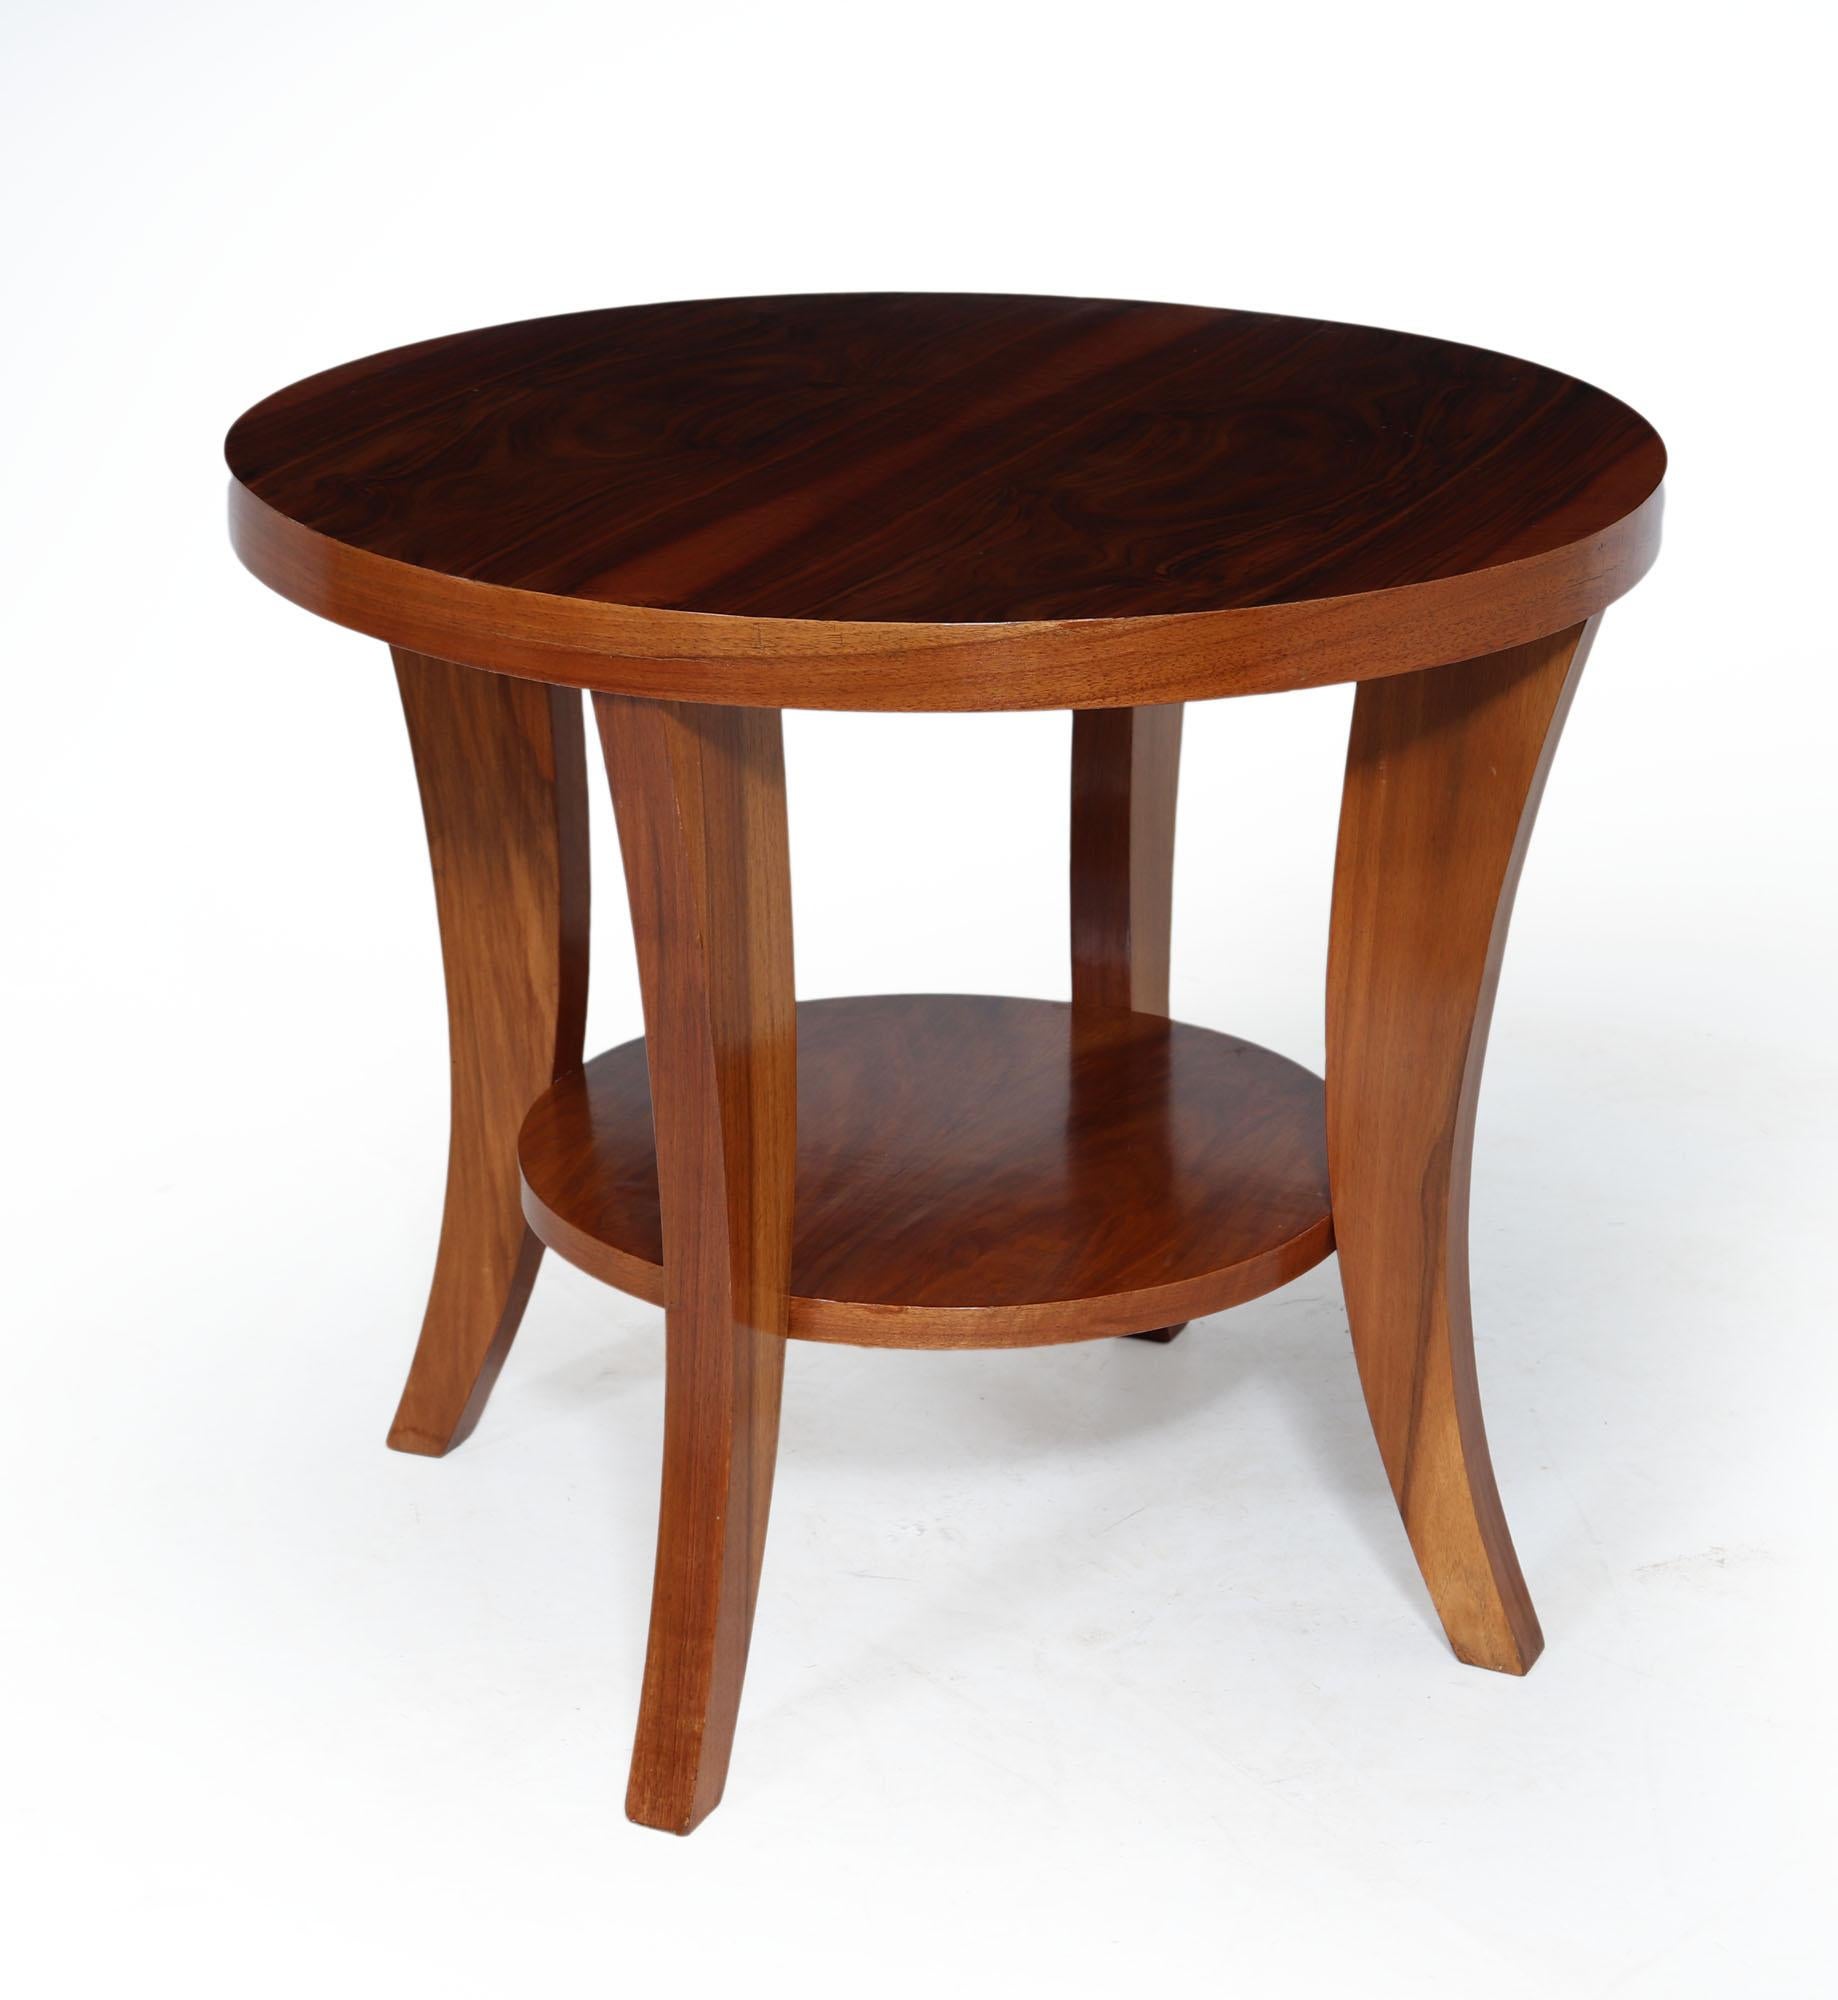 ART DECO COUCHTISCH
Ein kreisförmiger Couchtisch aus gemasertem Nussbaumholz, hergestellt in Frankreich in den 1930er Jahren, der Tisch hat vier Säbelbeine mit einer mittleren unteren Ebene Regal, der Tisch wurde vollständig restauriert und poliert